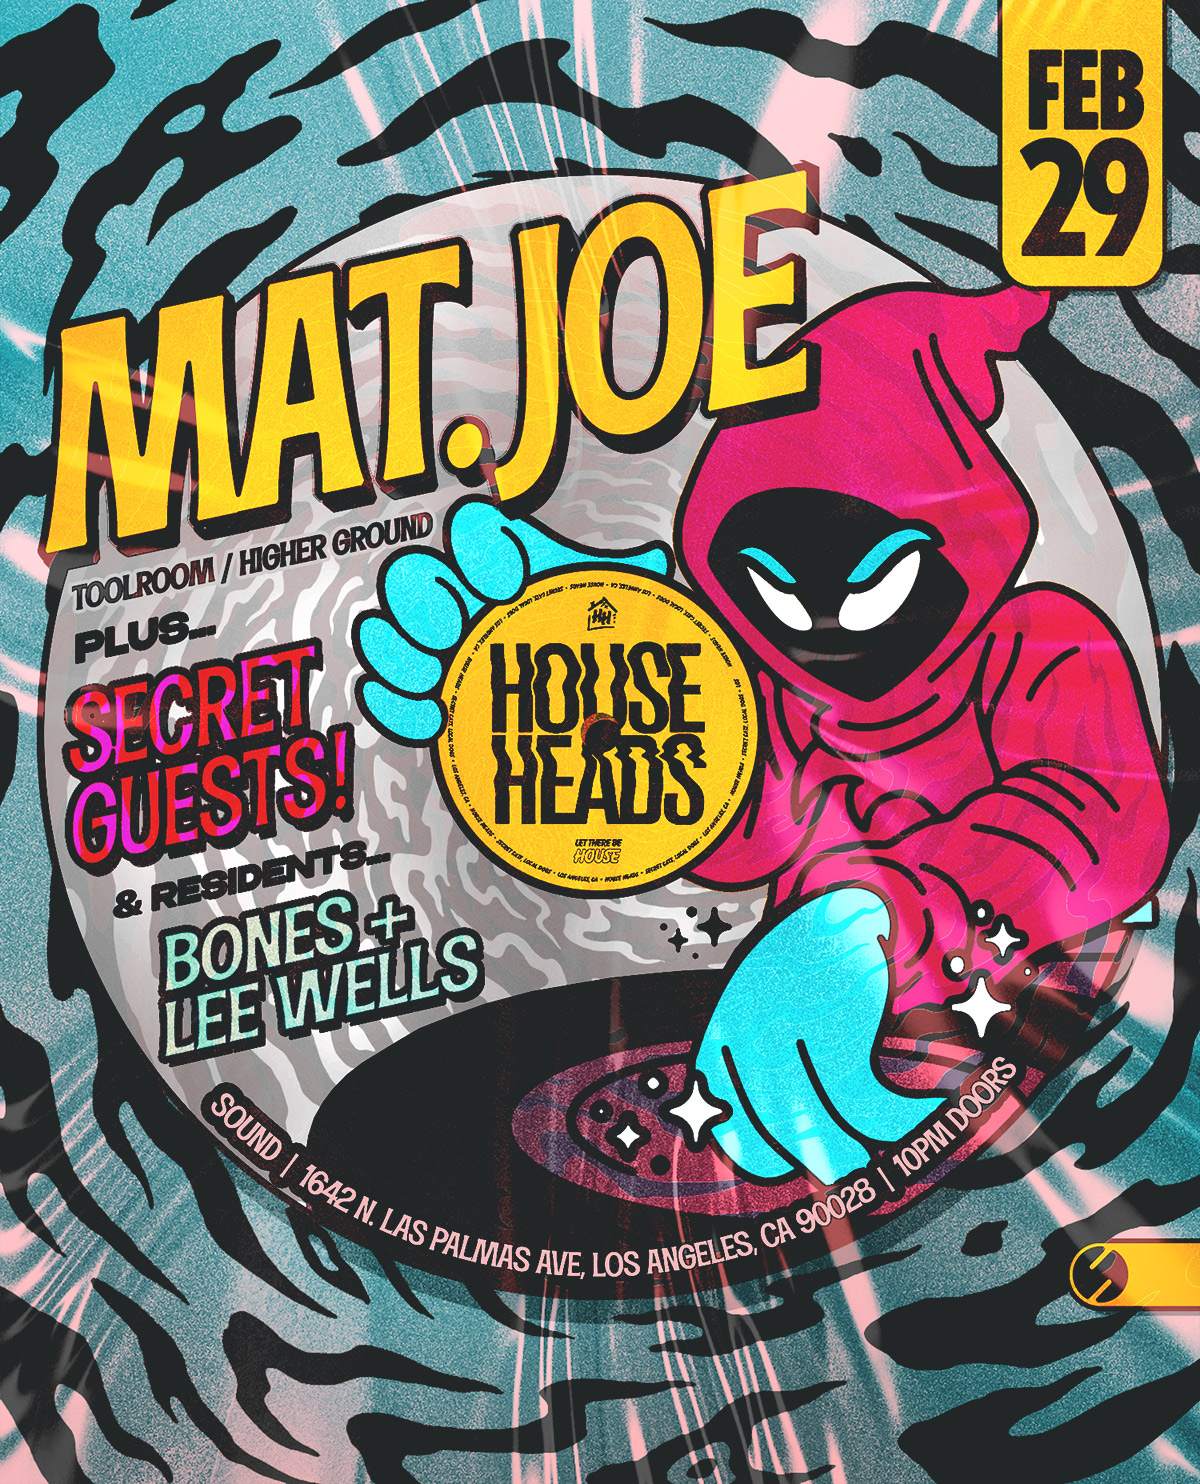 House Heads feat. Mat.Joe (Toolroom / Higher Ground) - フライヤー表